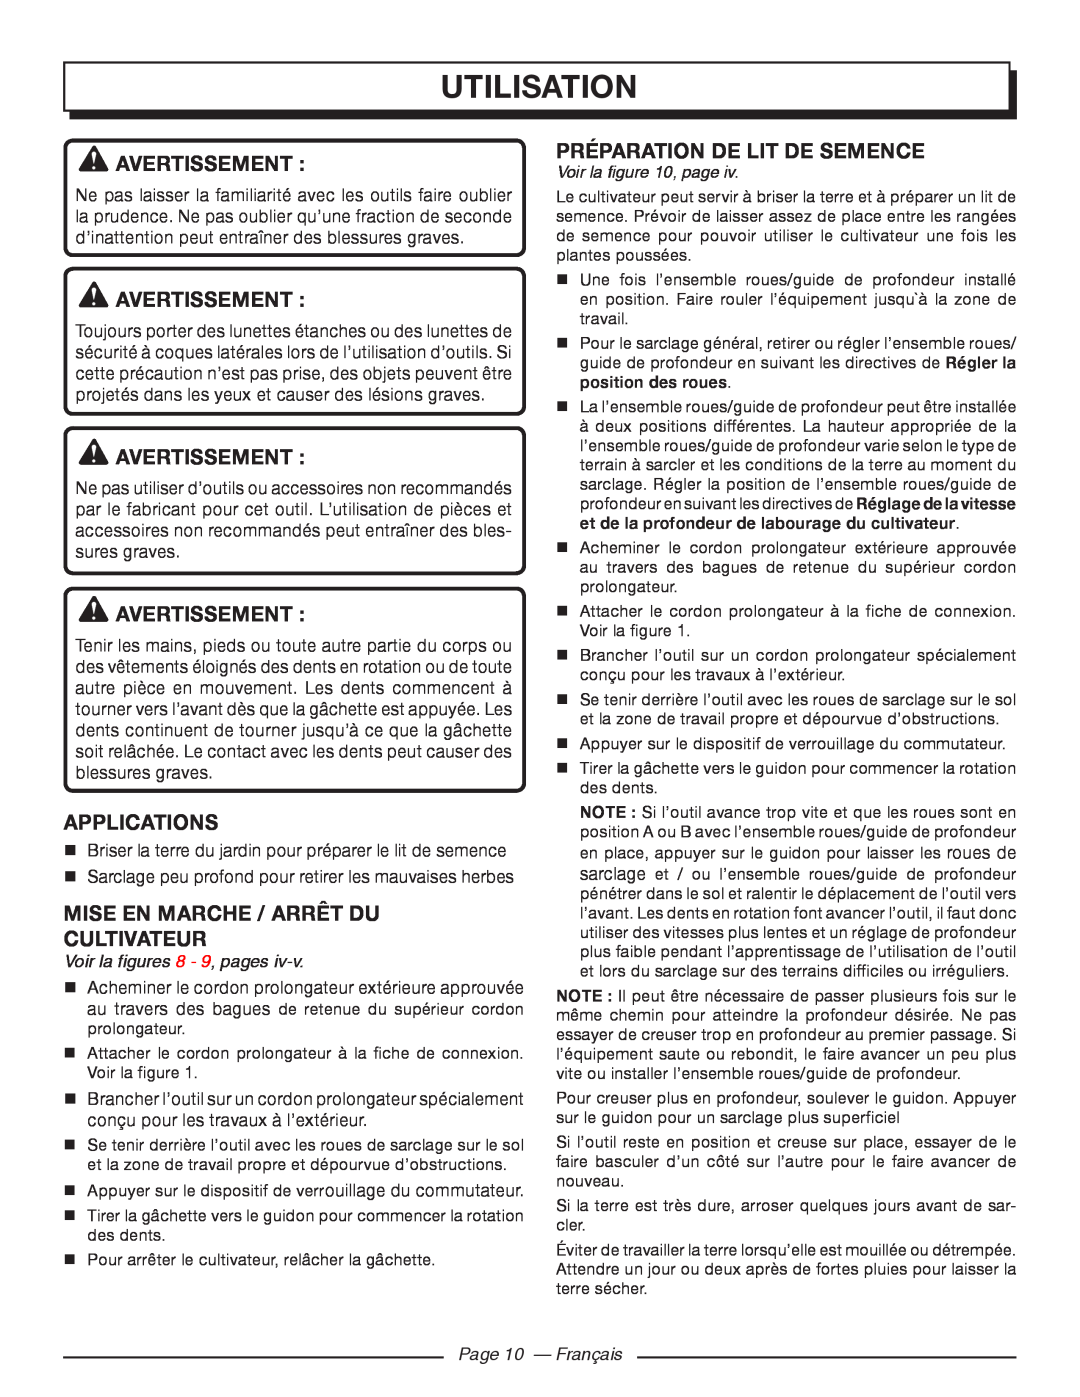 Homelite UT46510 Utilisation, Avertissement , applications, Mise En Marche / Arrêt Du Cultivateur, Voir la , page 